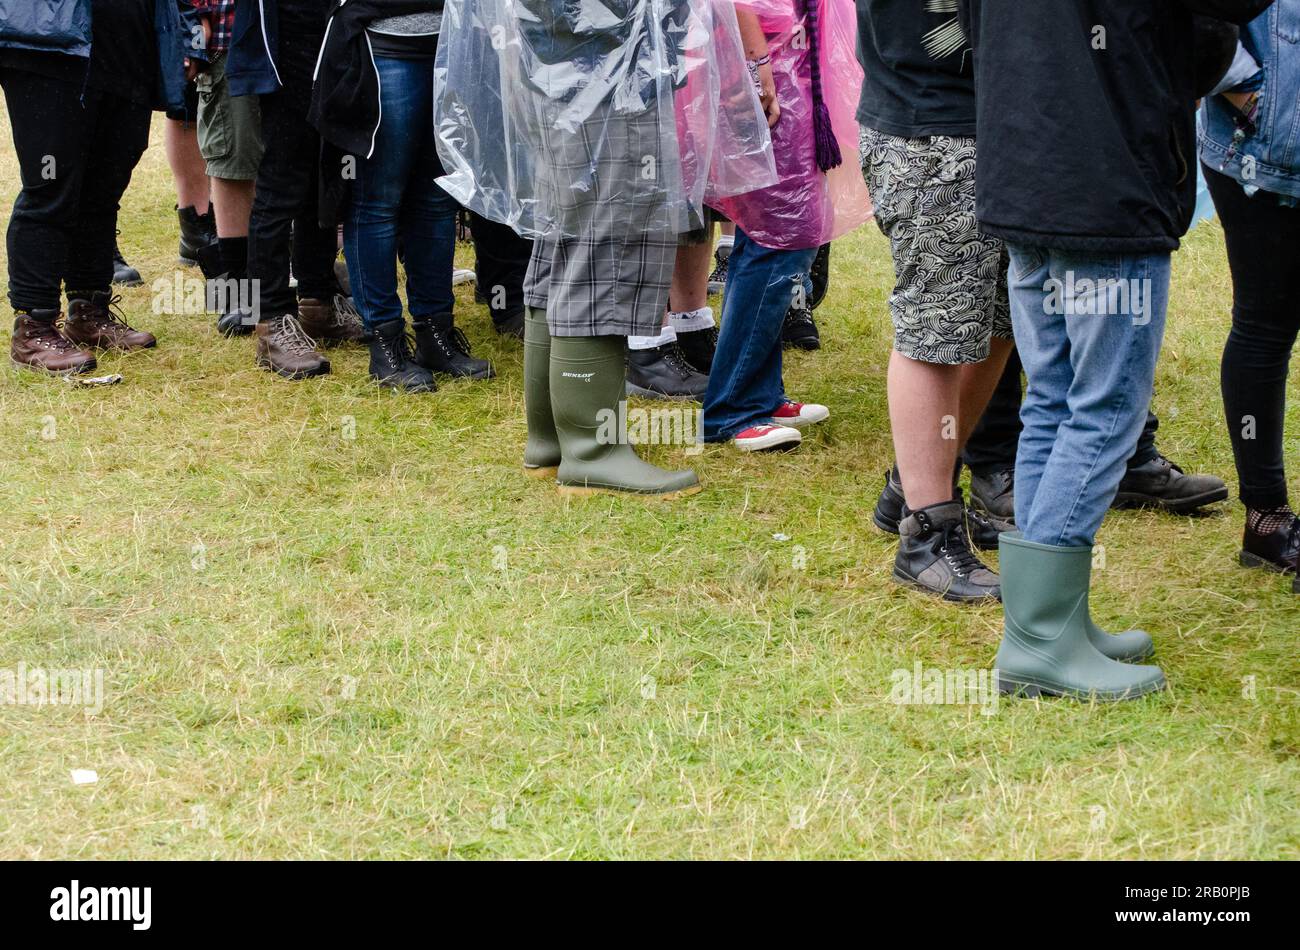 Rock-Fans stehen beim Sonisphere Rock Festival in Knebworth, Hertfordshire, Großbritannien in der Schlange. Veranstaltung bei schlechtem Wetter im Freien. Nasser Sommer Stockfoto